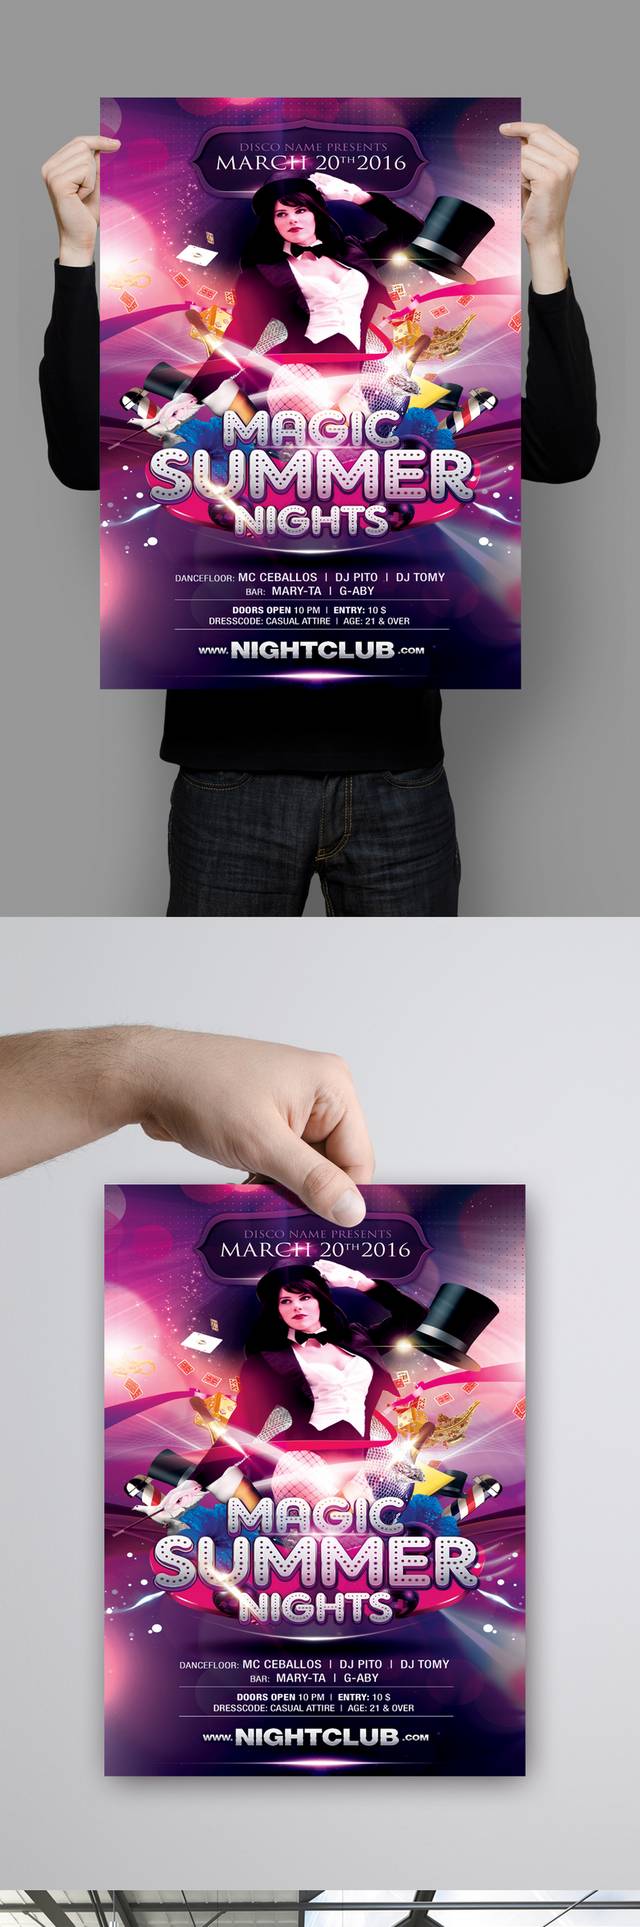 紫色炫彩创意英文海报